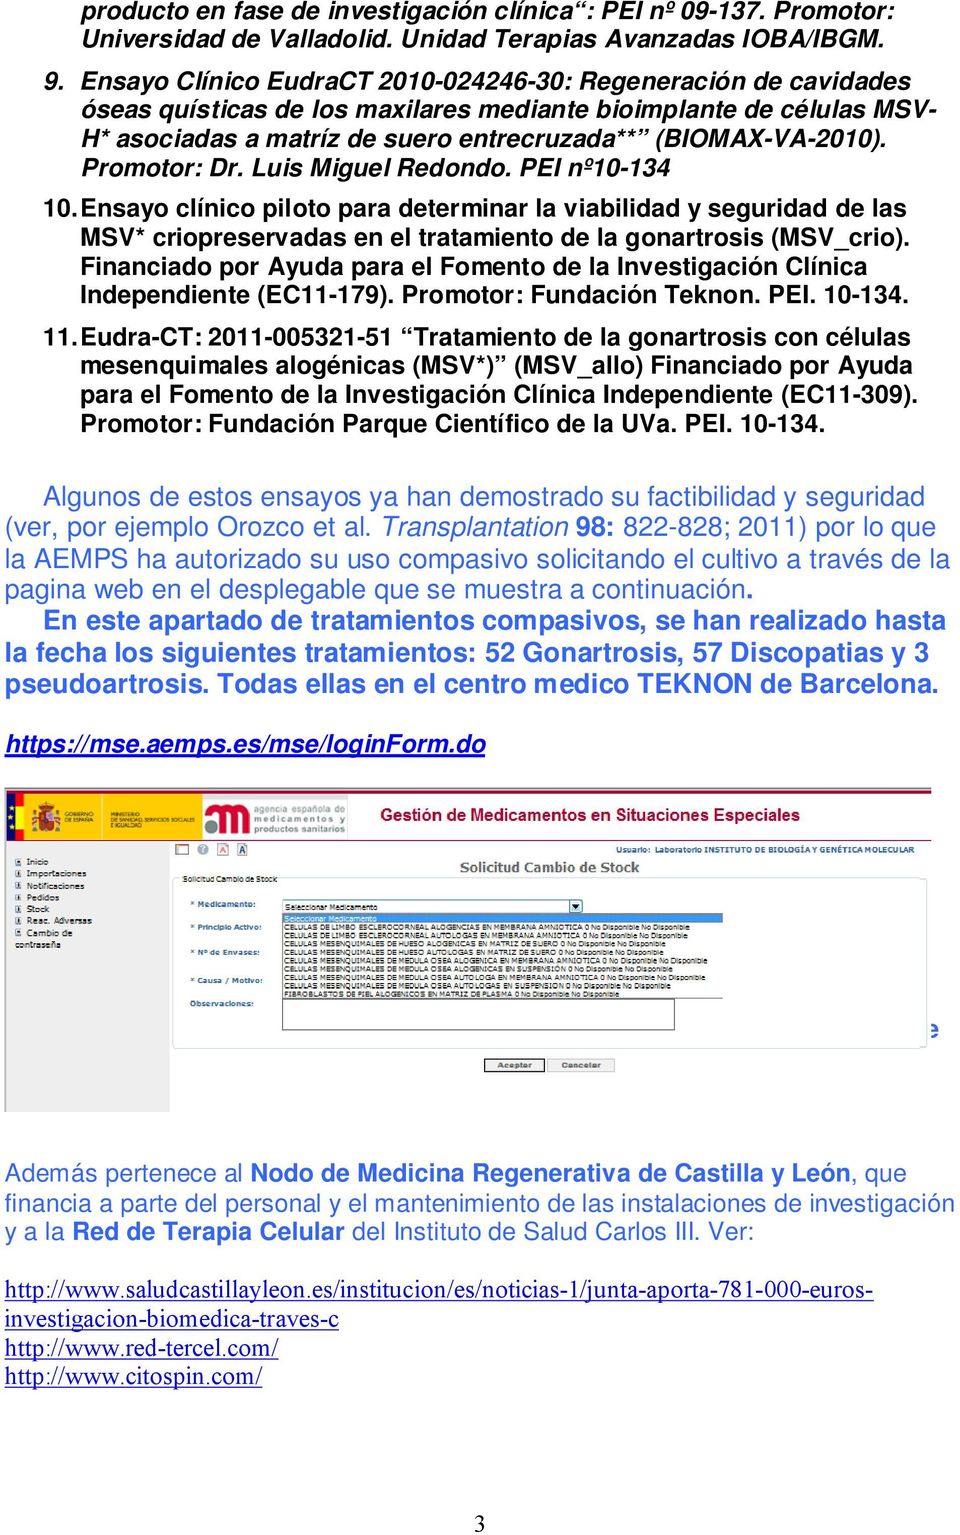 Promotor: Dr. Luis Miguel Redondo. PEI nº10-134 10. Ensayo clínico piloto para determinar la viabilidad y seguridad de las MSV* criopreservadas en el tratamiento de la gonartrosis (MSV_crio).